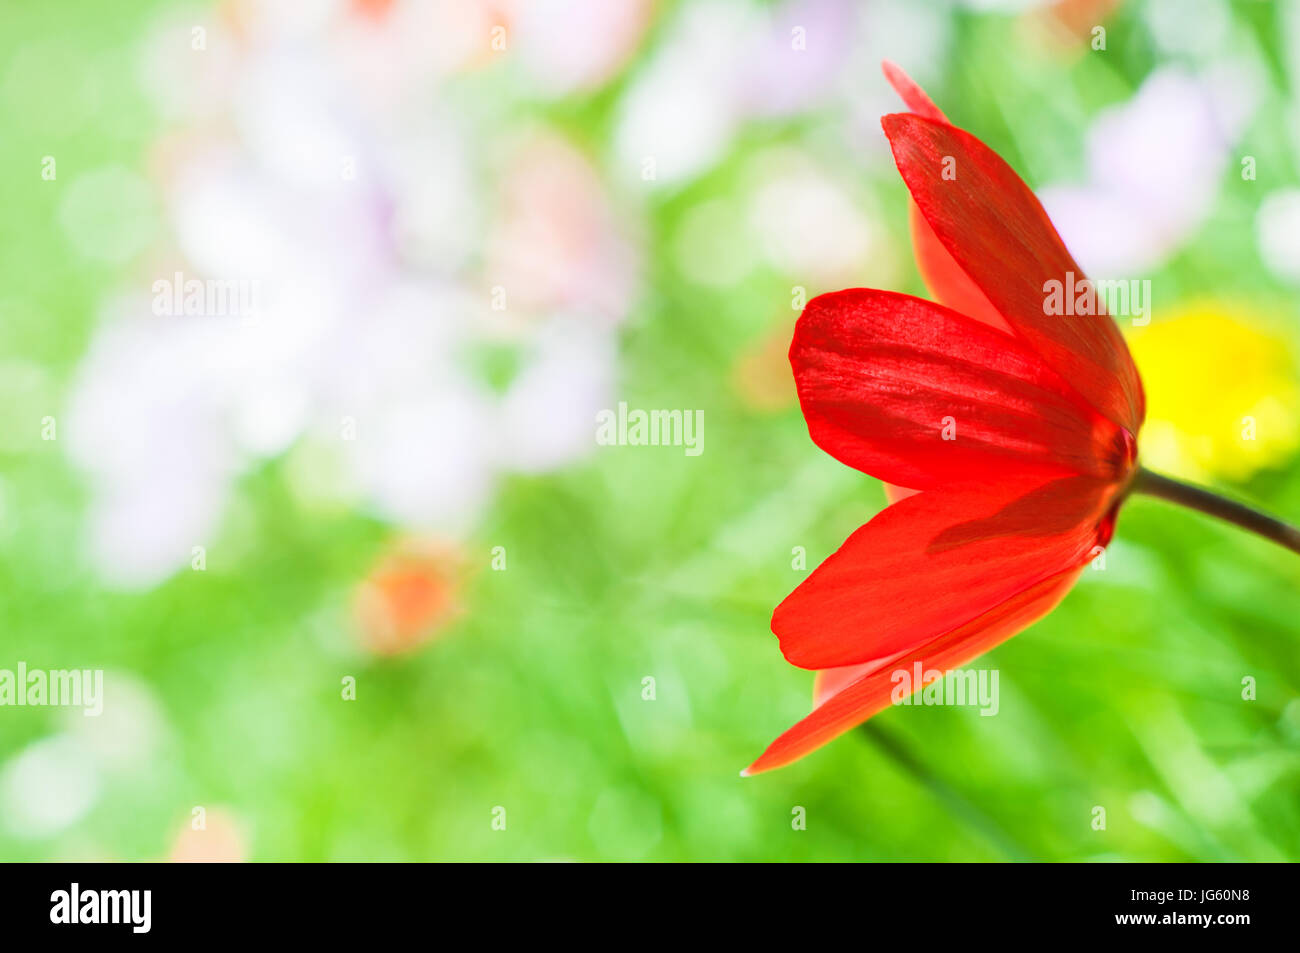 Eine helle rote Tulpe aus rechten Frame mit Schwerpunkt Erweichung in die hellen grünen Rasen und Frühlingsblumen dahinter erreichte Nahaufnahme Seitenansicht. Stockfoto